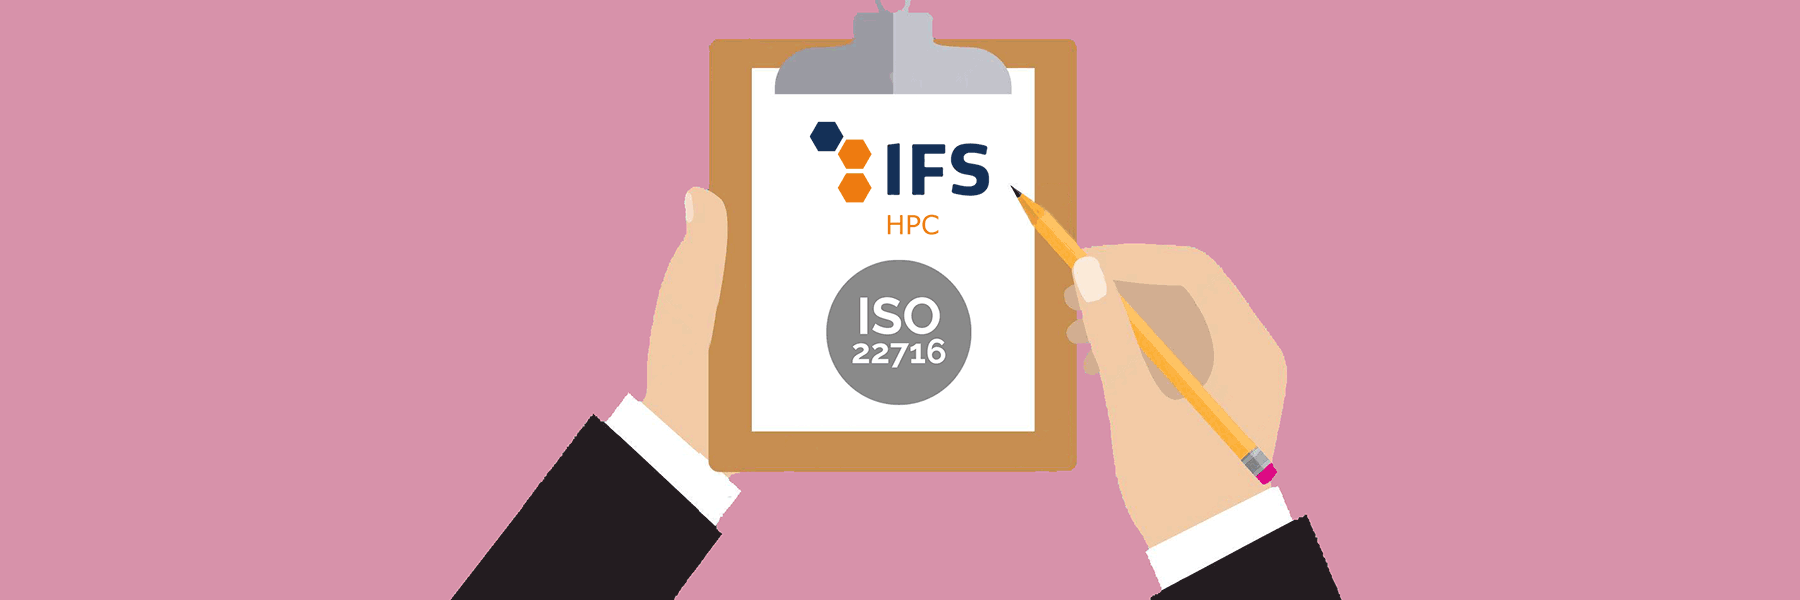 Webinar IFS HPC e ISO 22716